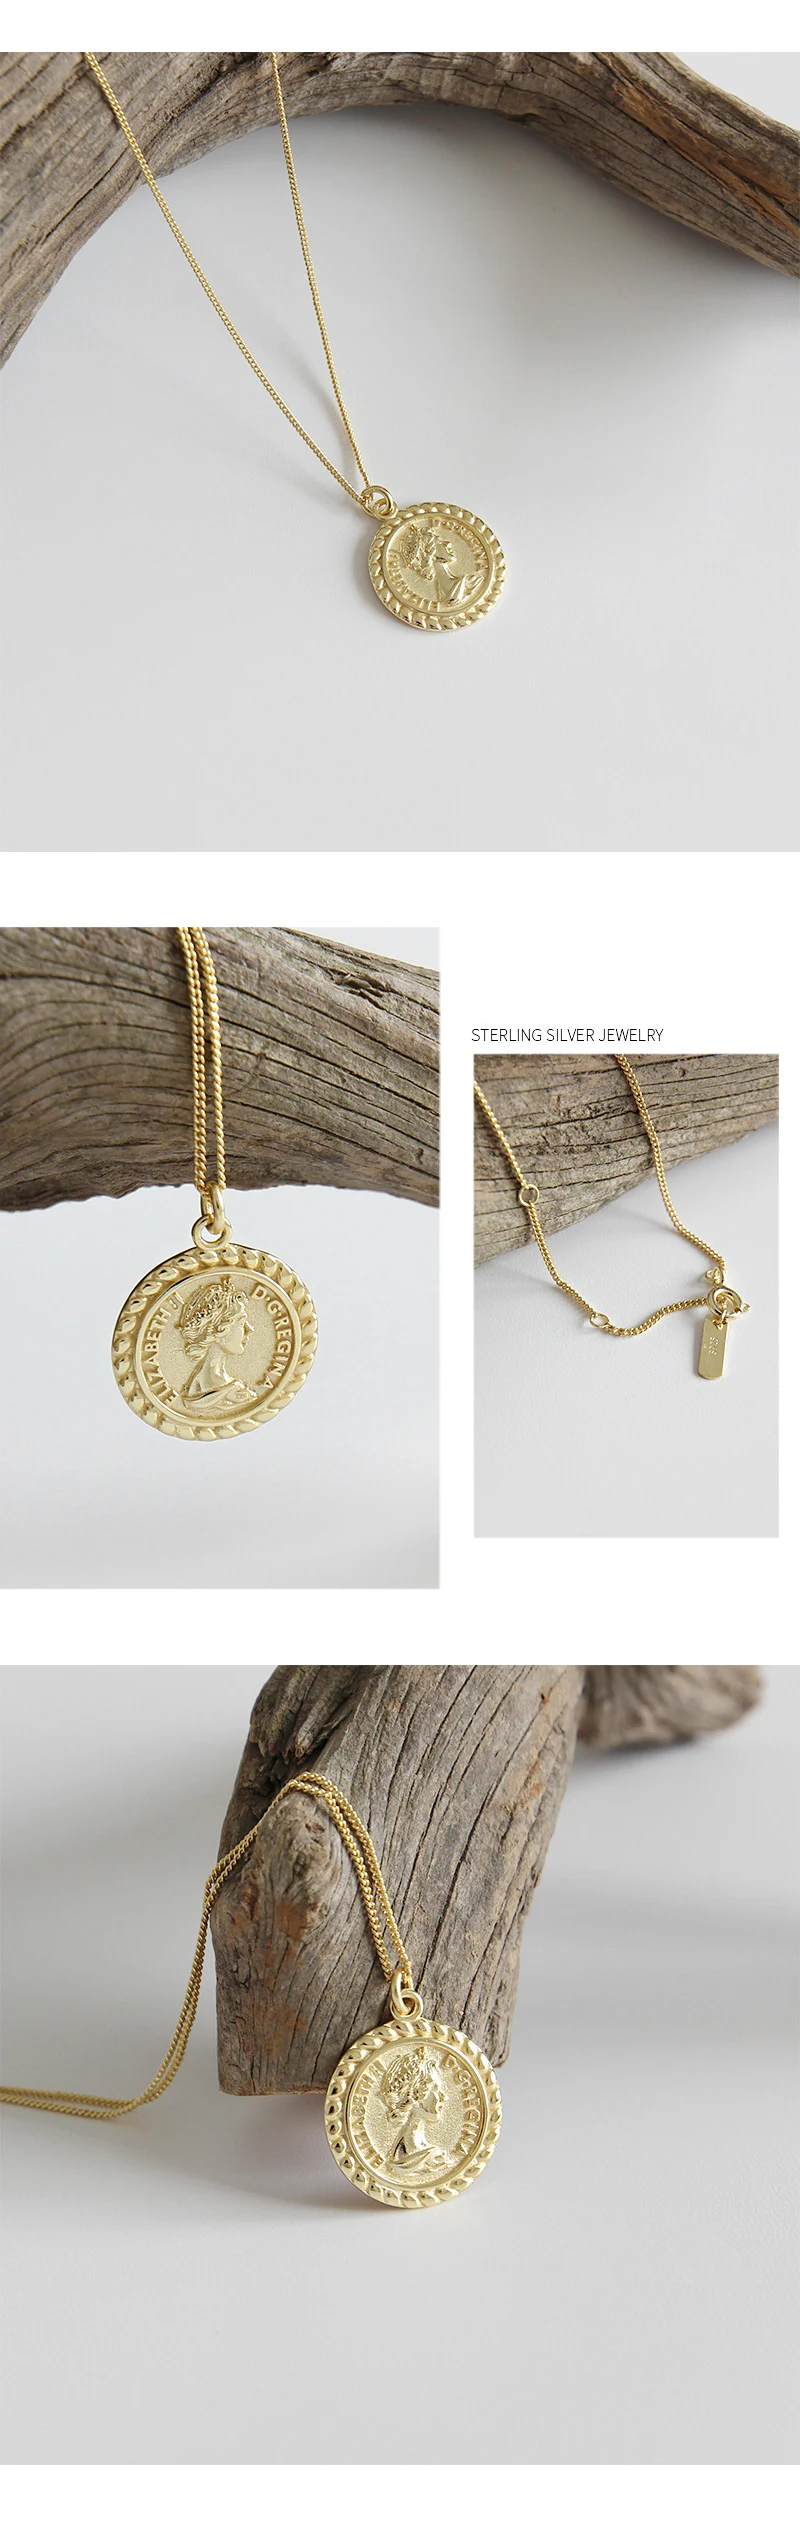 F.I.N.S золотистый гравированный кулон Элиза монета ожерелье 925 пробы серебряные ключицы цепочки с орнаментом Серебро 925 Подарки для женщин